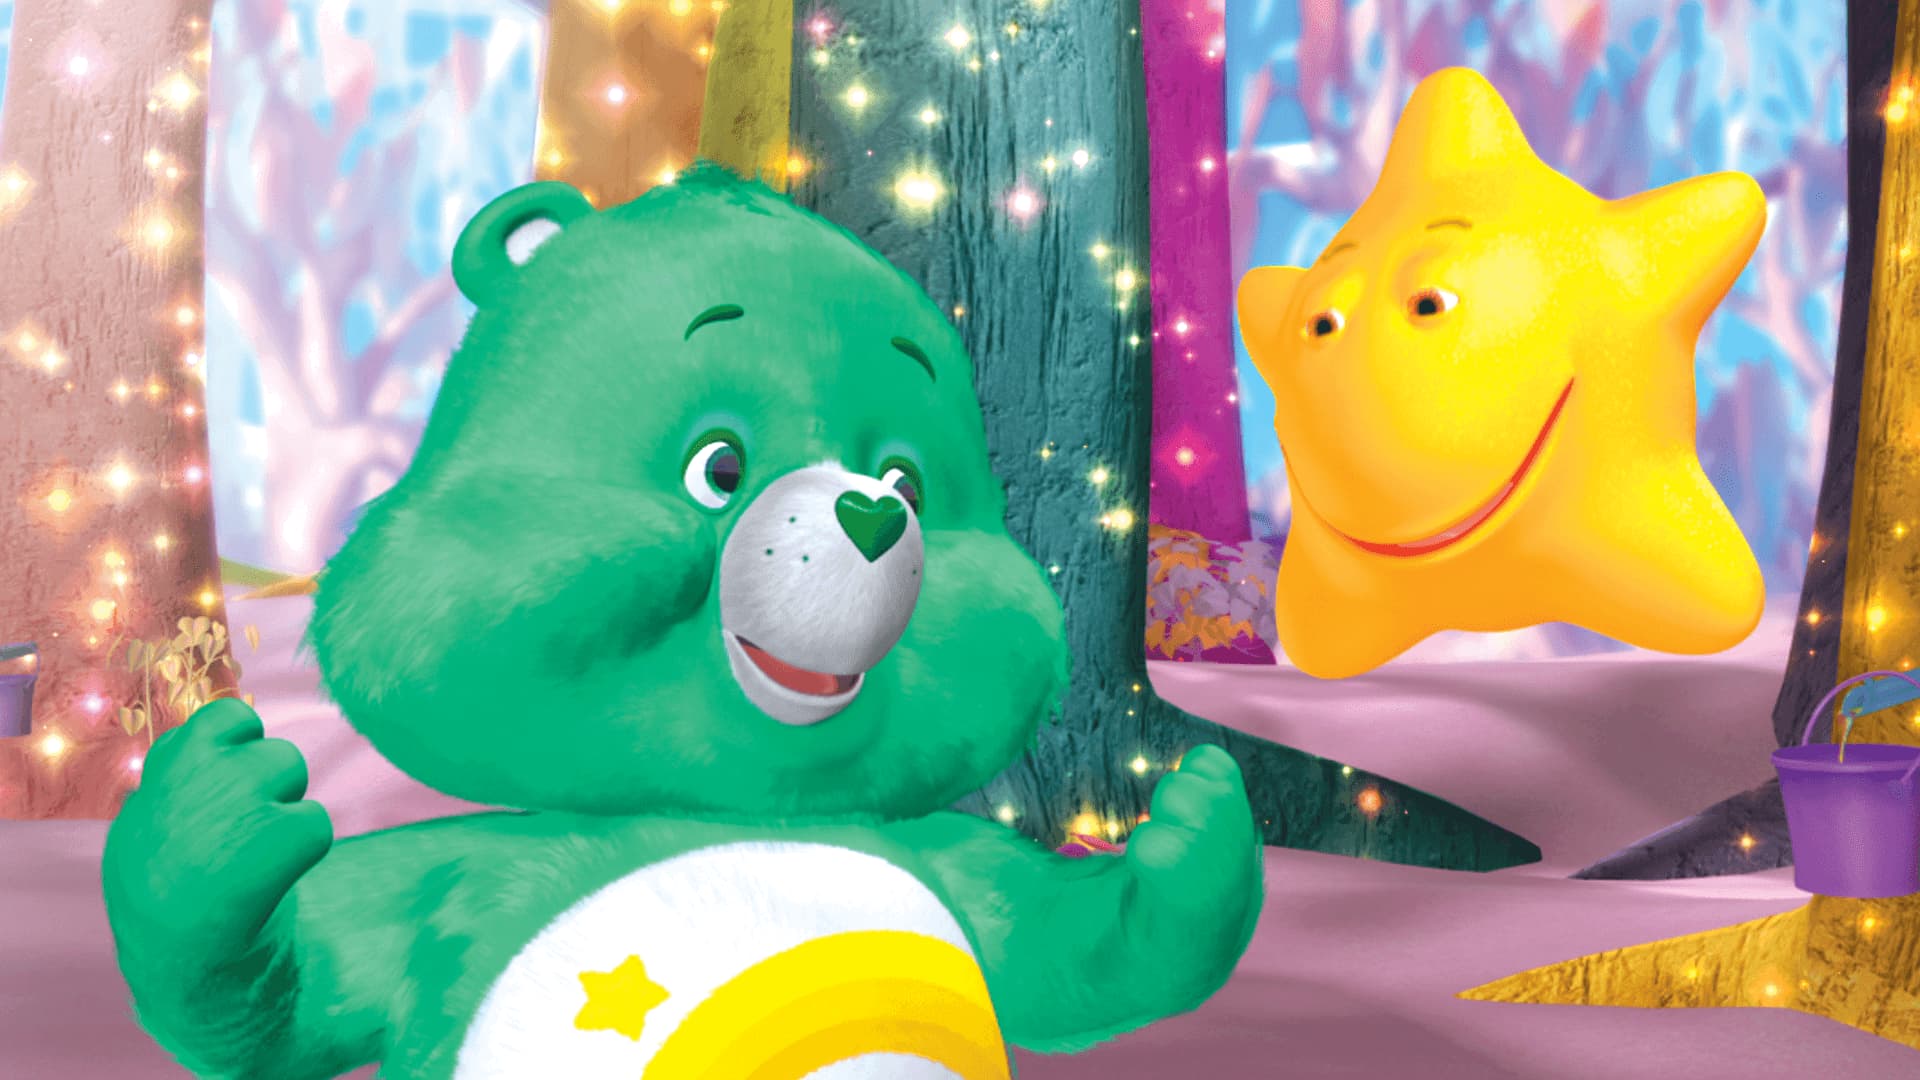 The Care Bears Movie - Movies on Google Play